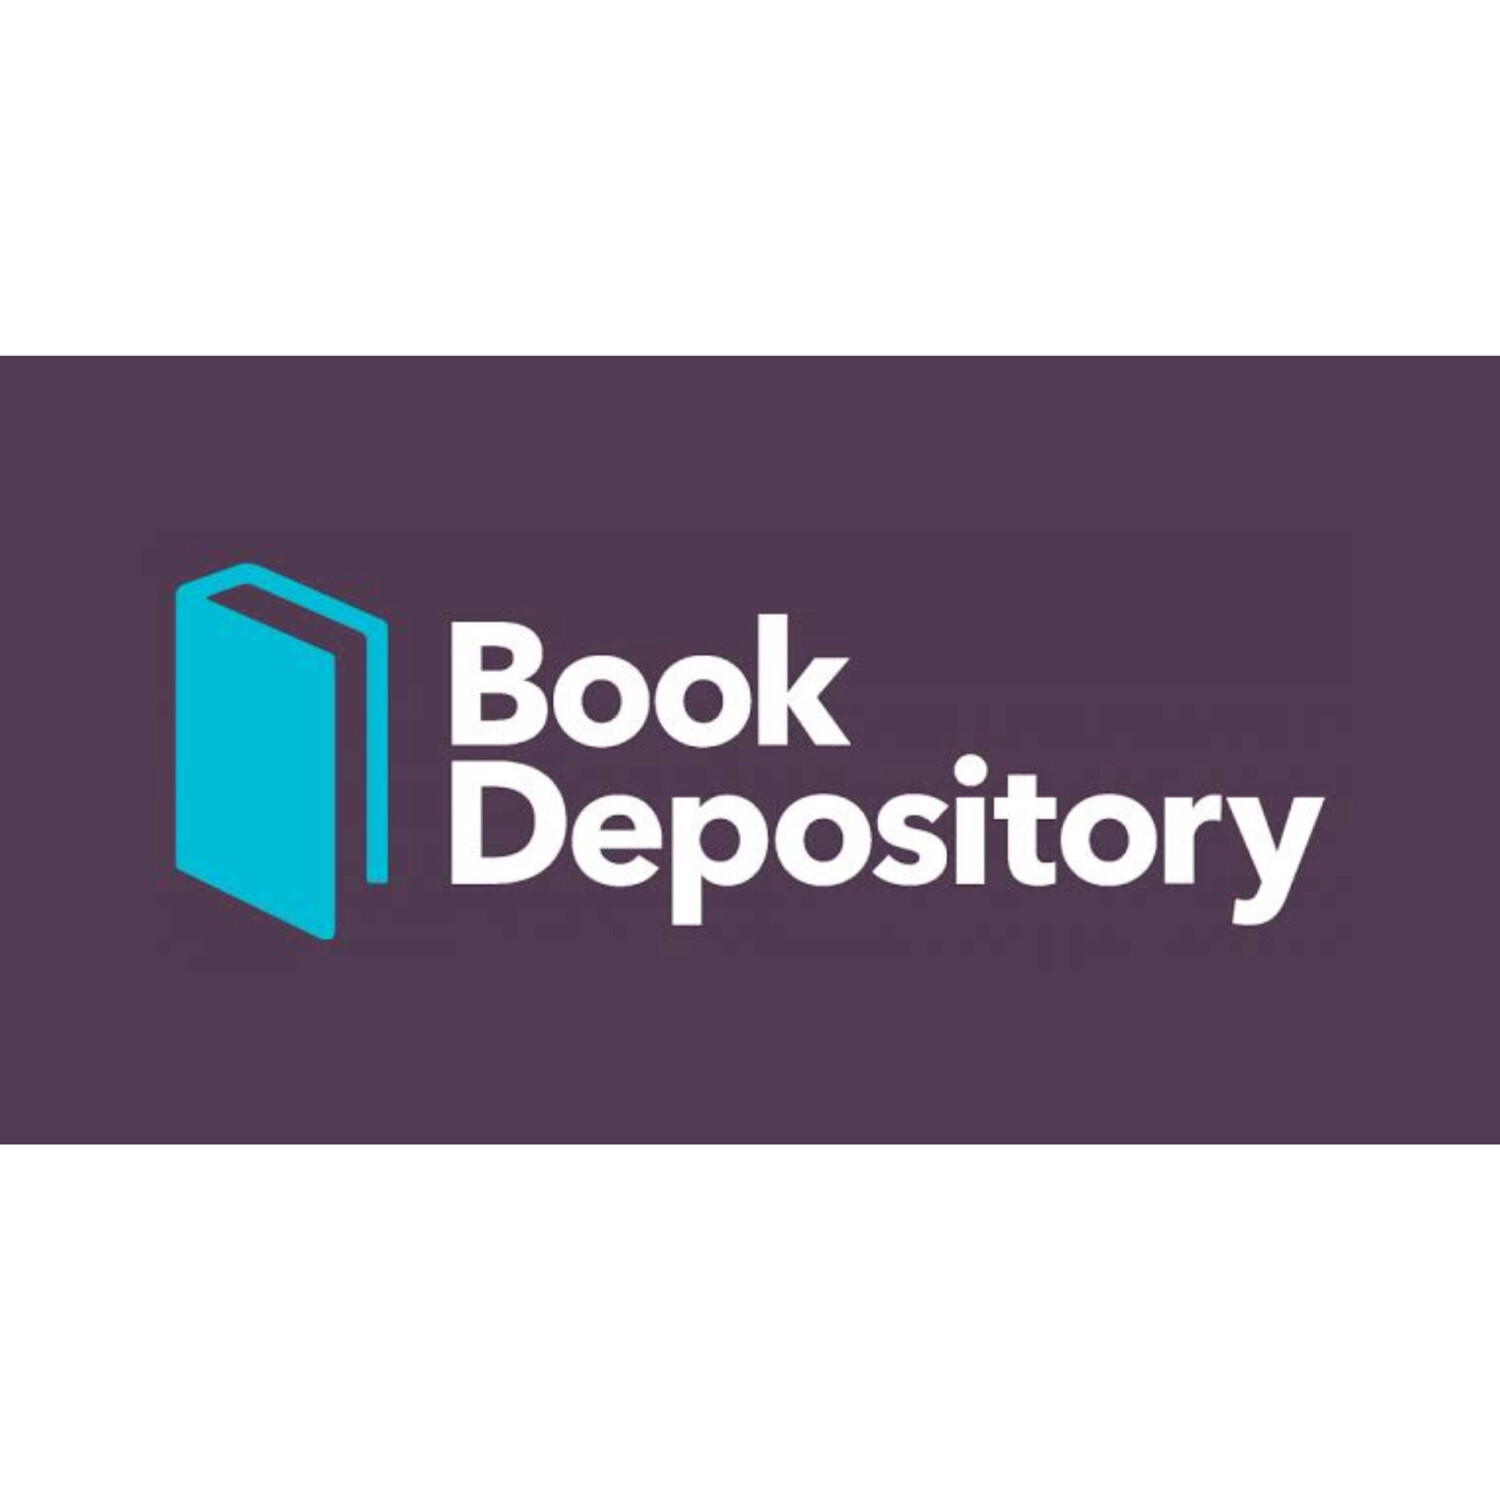 Jasa Bookdepository.com Pembayaran di Bookdepository